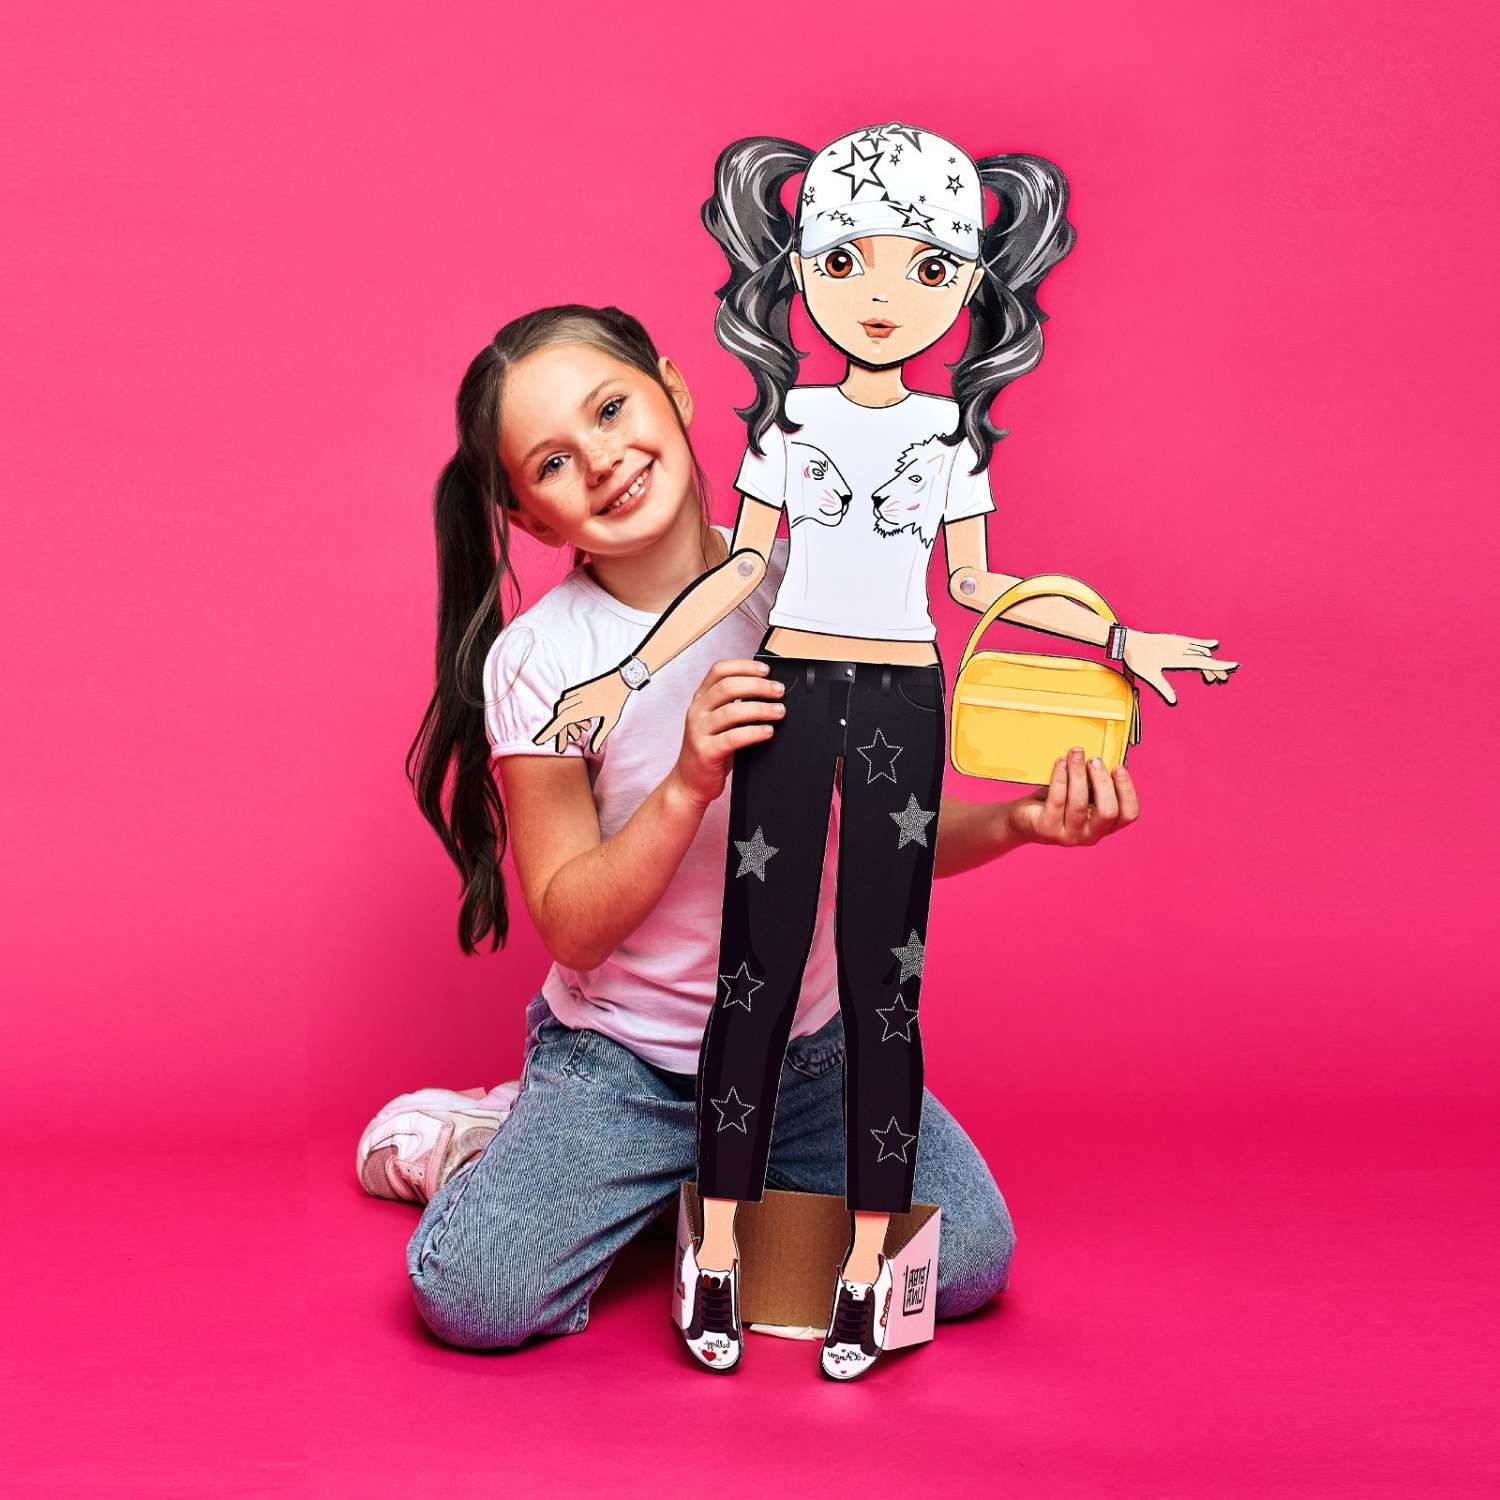 Кукла Bibalina с одеждой из картона Trendy doll Хлоя ИНП-102 - фото 9